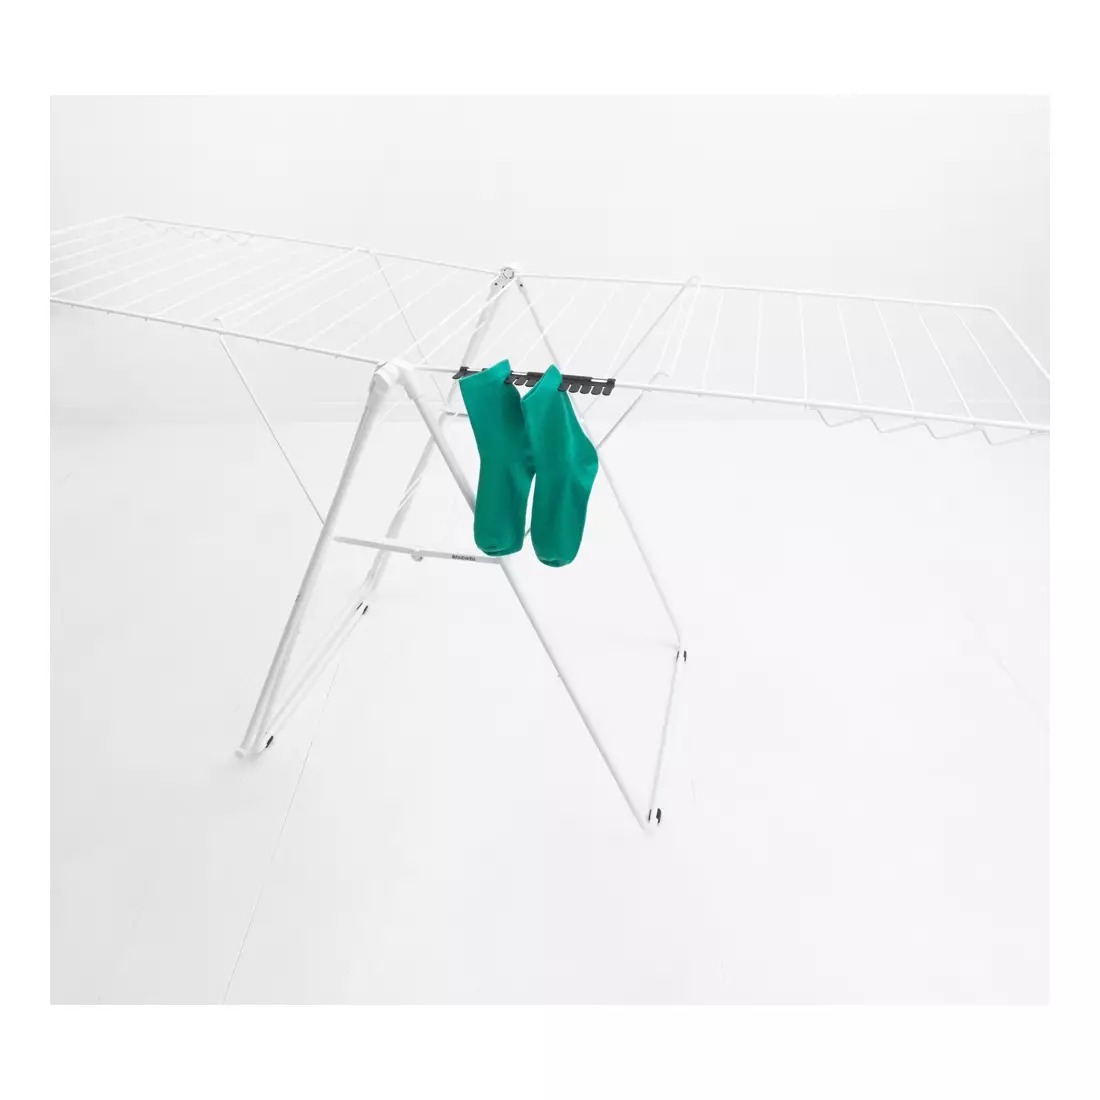 BRABANTIA socks hanger, black, 2 pieces